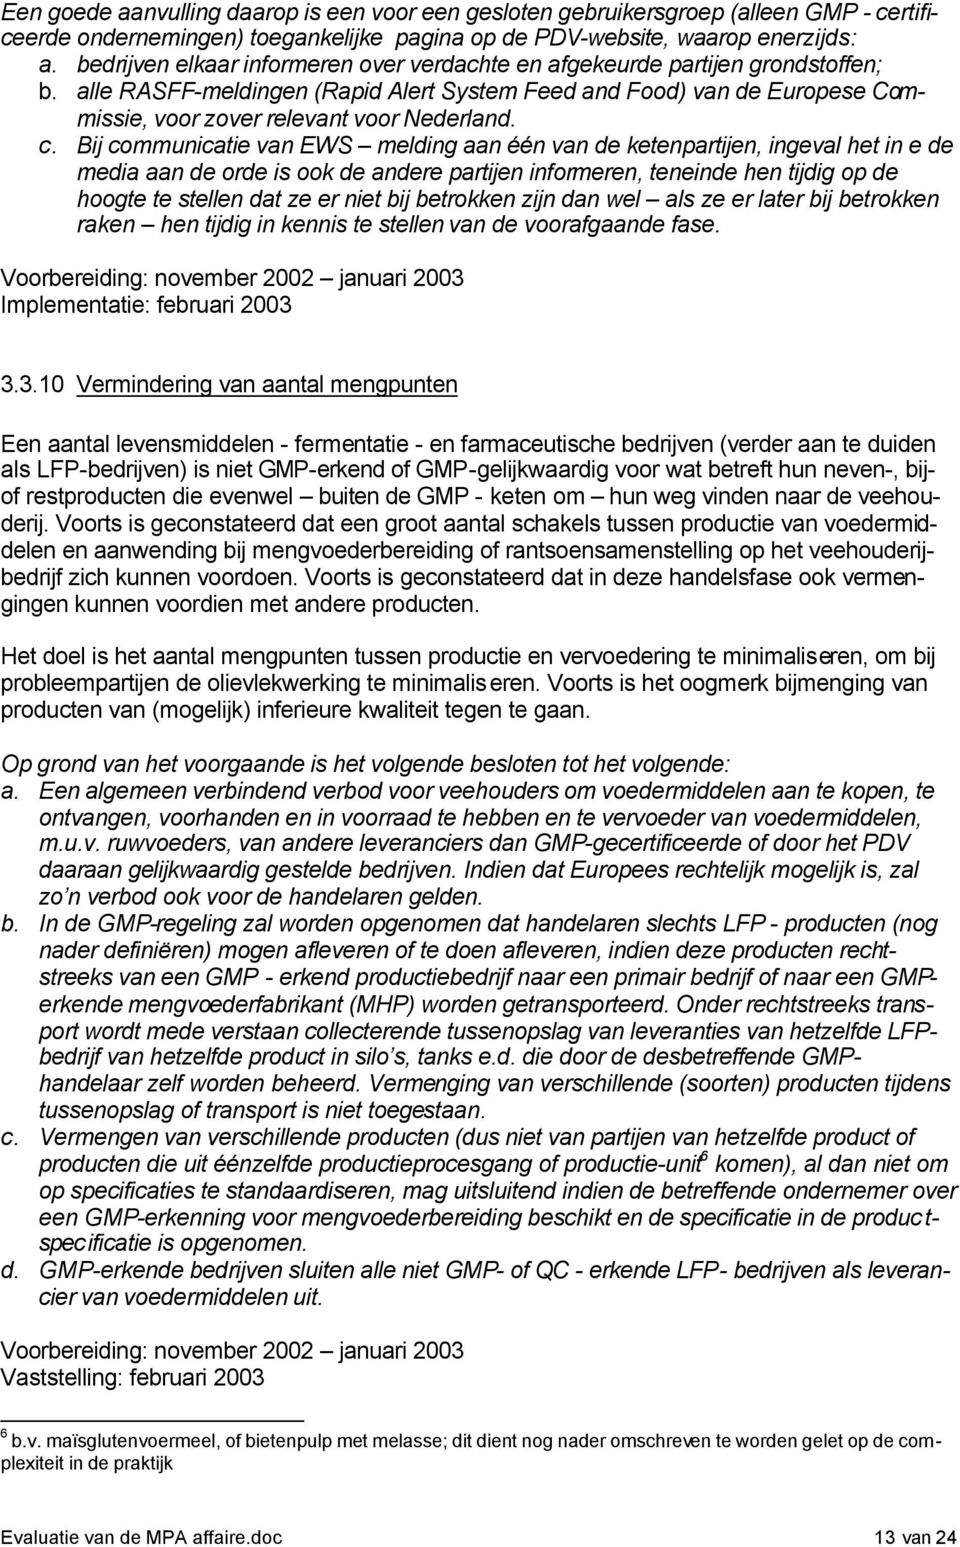 alle RASFF-meldingen (Rapid Alert System Feed and Food) van de Europese Commissie, voor zover relevant voor Nederland. c.